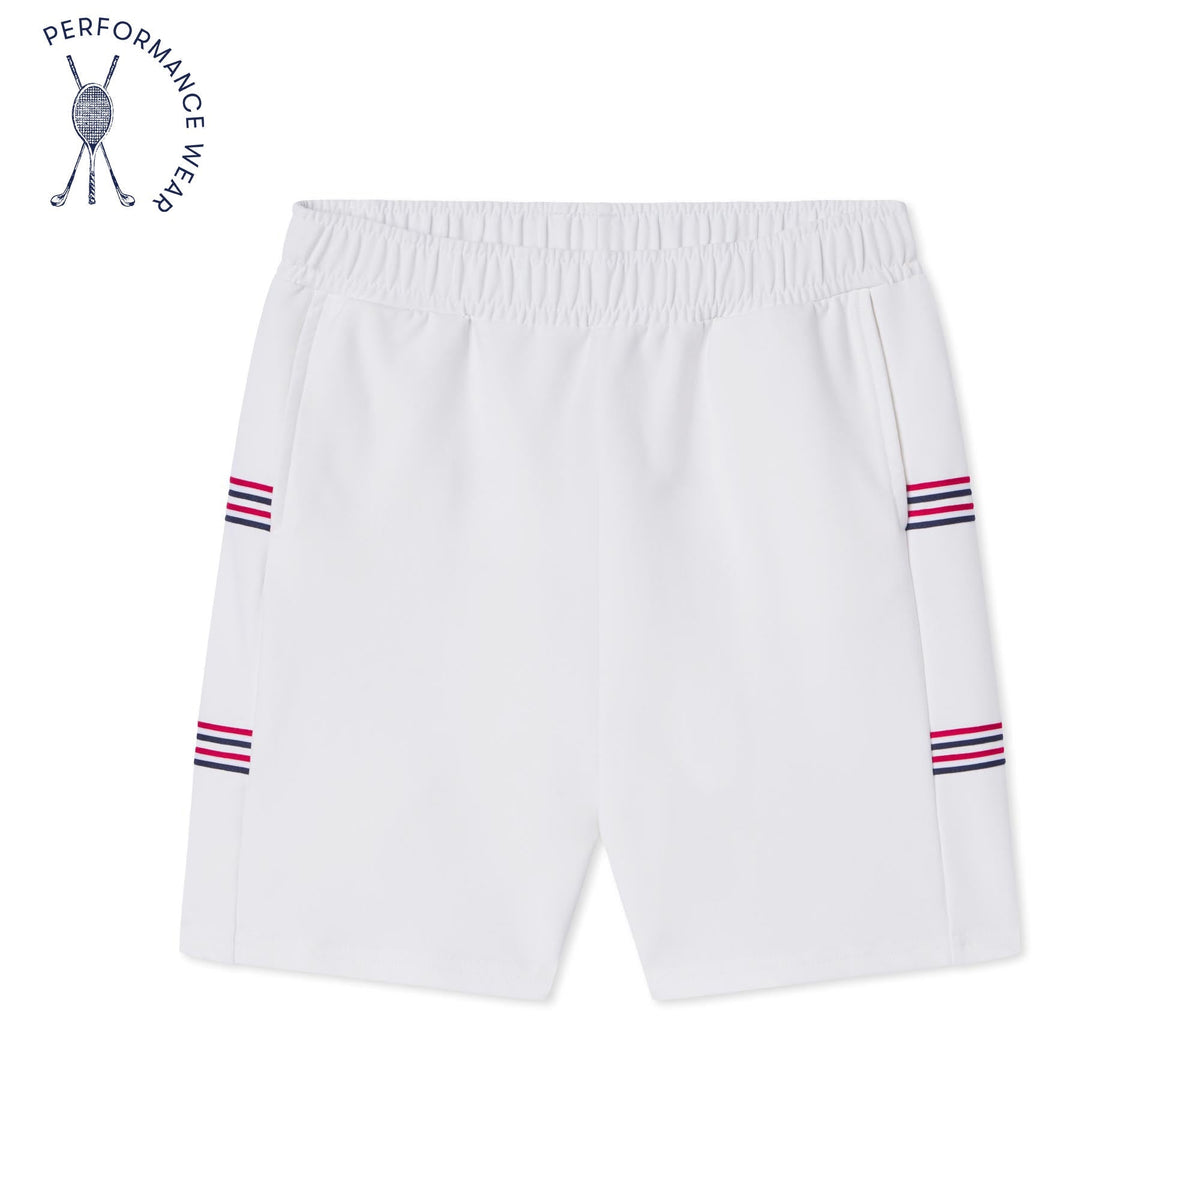 Classic and Preppy Tex Tennis Performance Americana Short, Bright White-Bottoms-Bright White-XS (2-3T)-CPC - Classic Prep Childrenswear